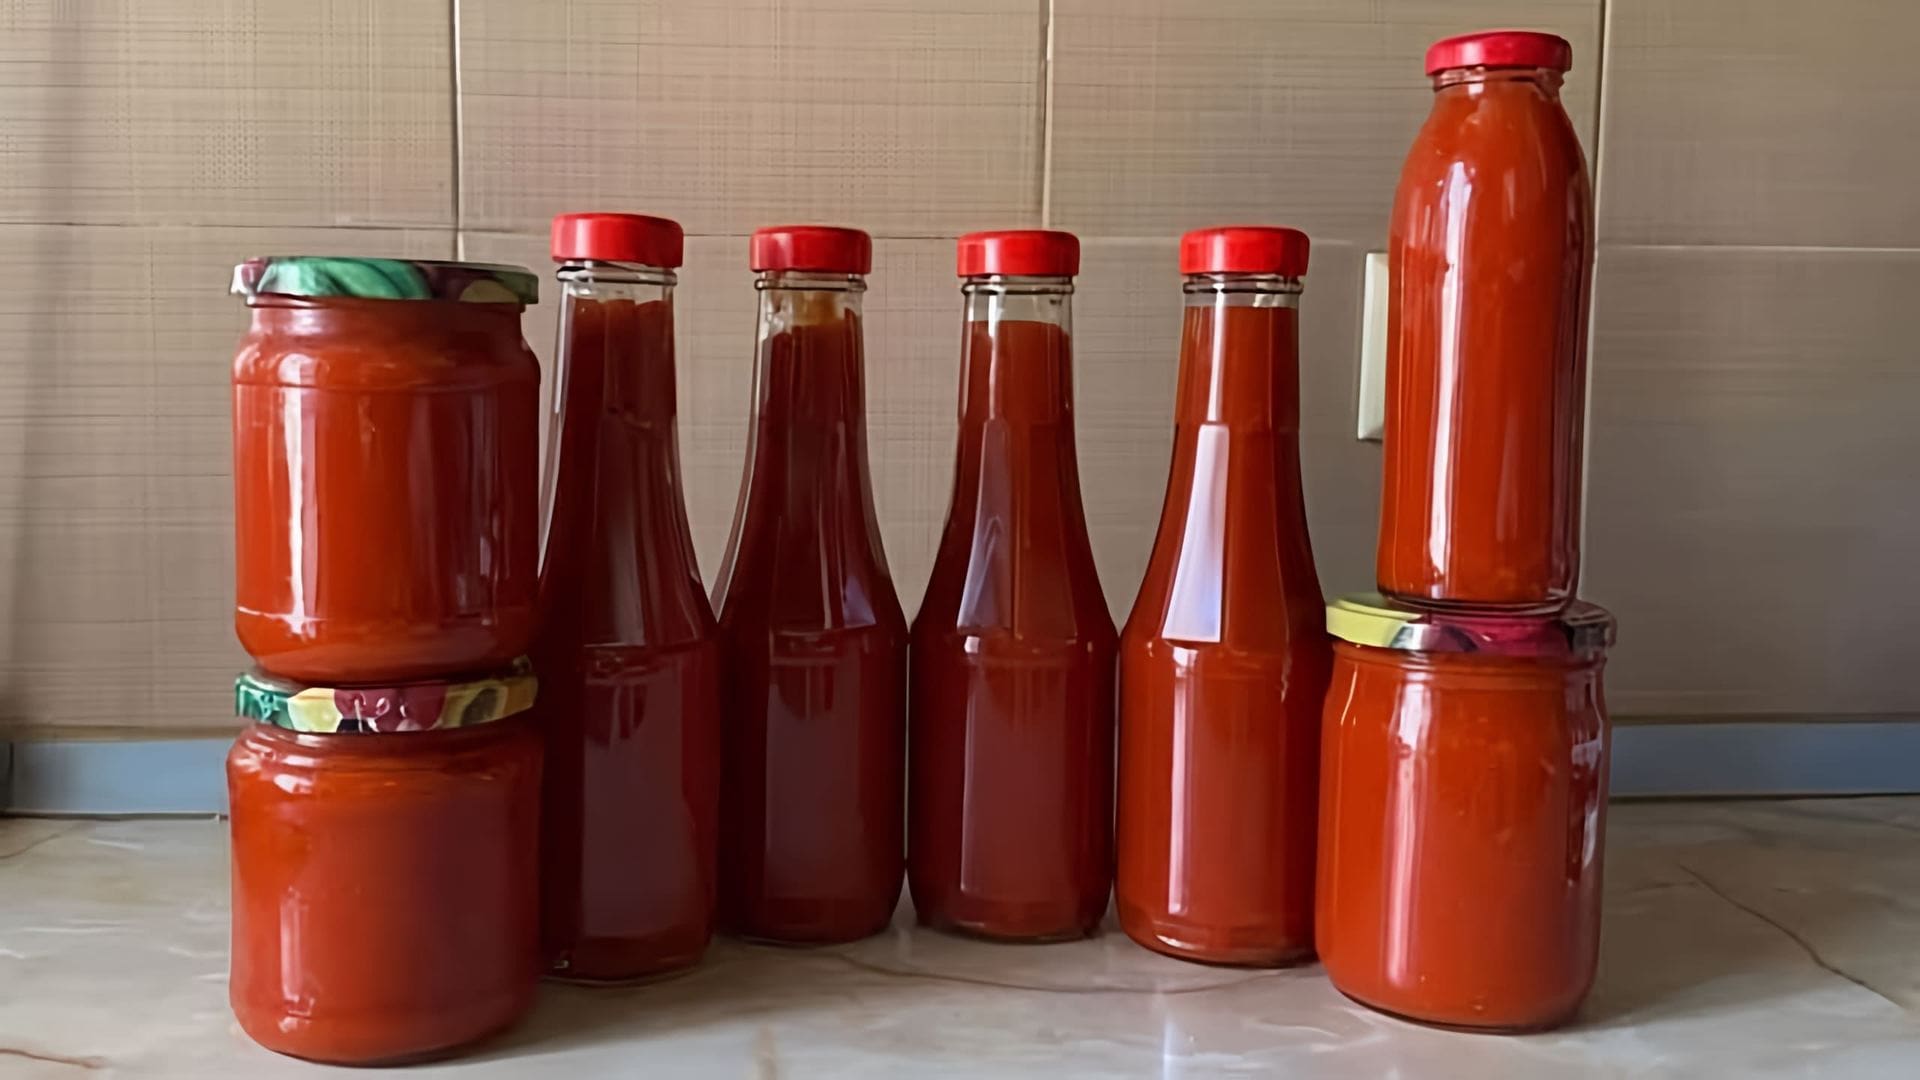 В этом видео демонстрируется процесс приготовления домашнего кетчупа